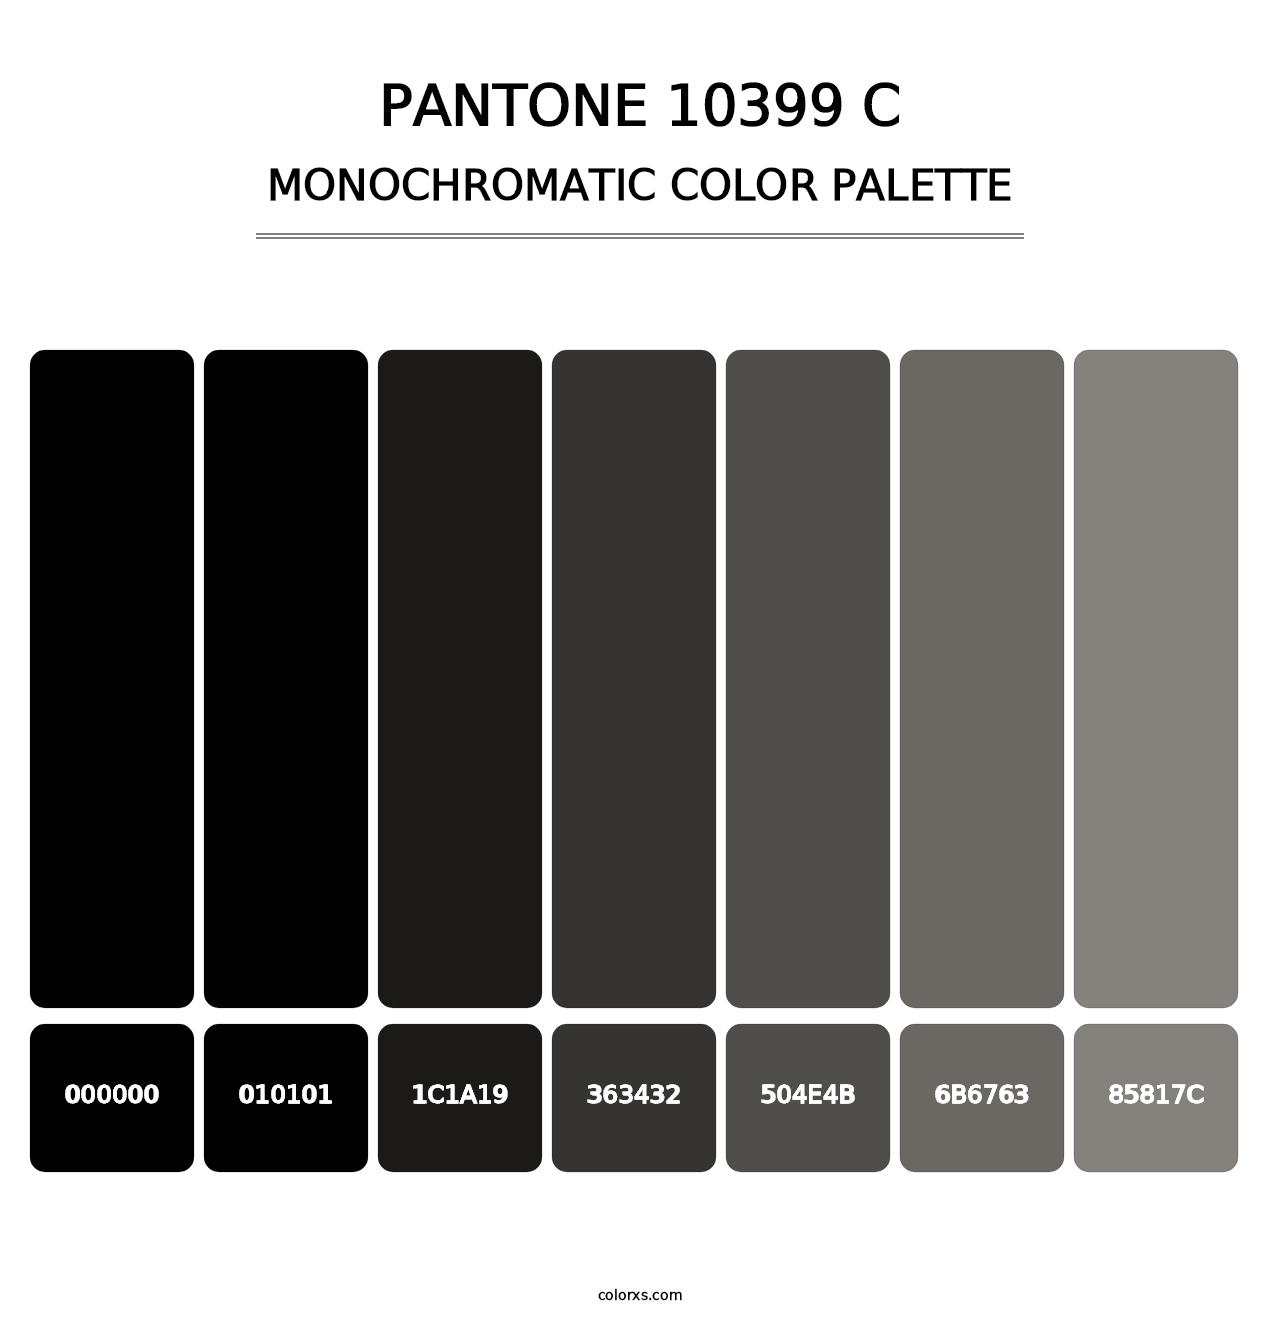 PANTONE 10399 C - Monochromatic Color Palette